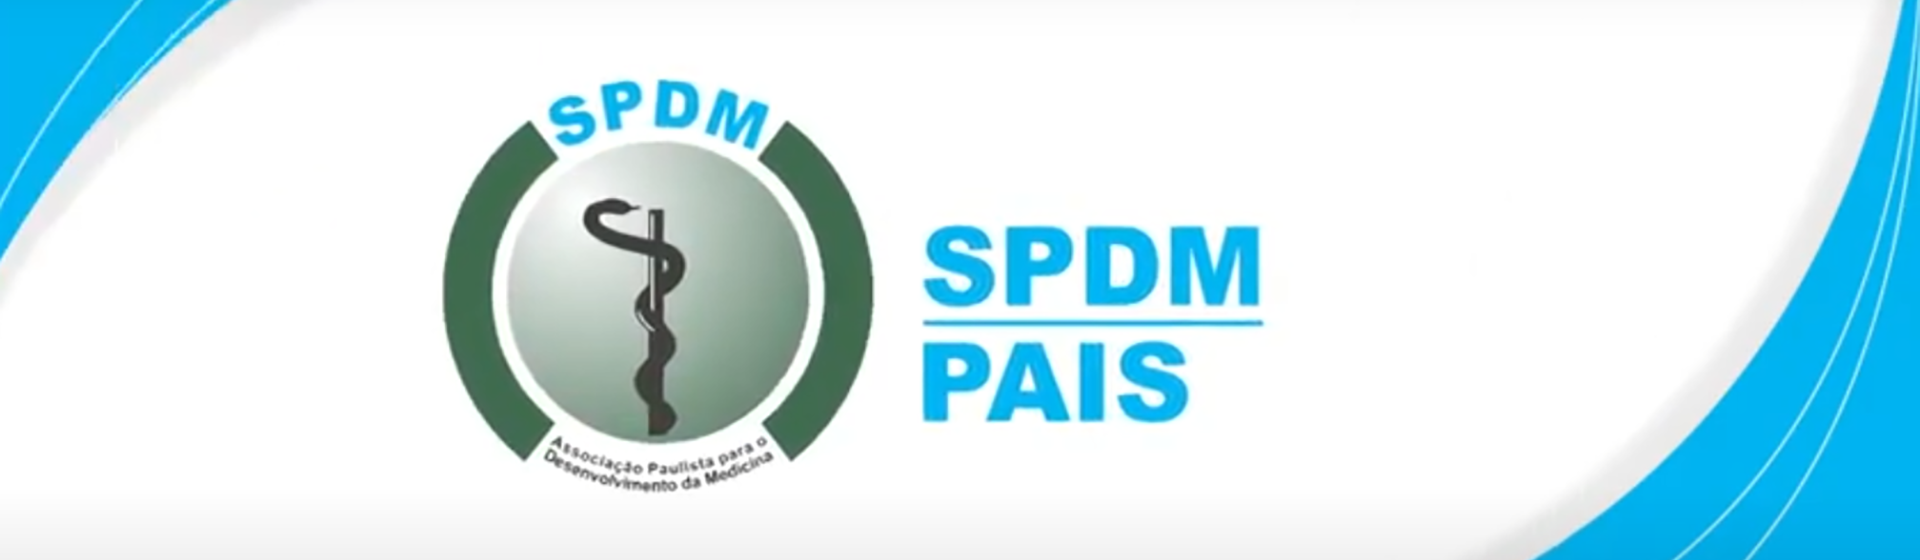 População de Mogi das Cruzes ganha mais um serviço da SPDM com certificação  internacional de qualidade – SPDM – Associação Paulista para o  Desenvolvimento da Medicina